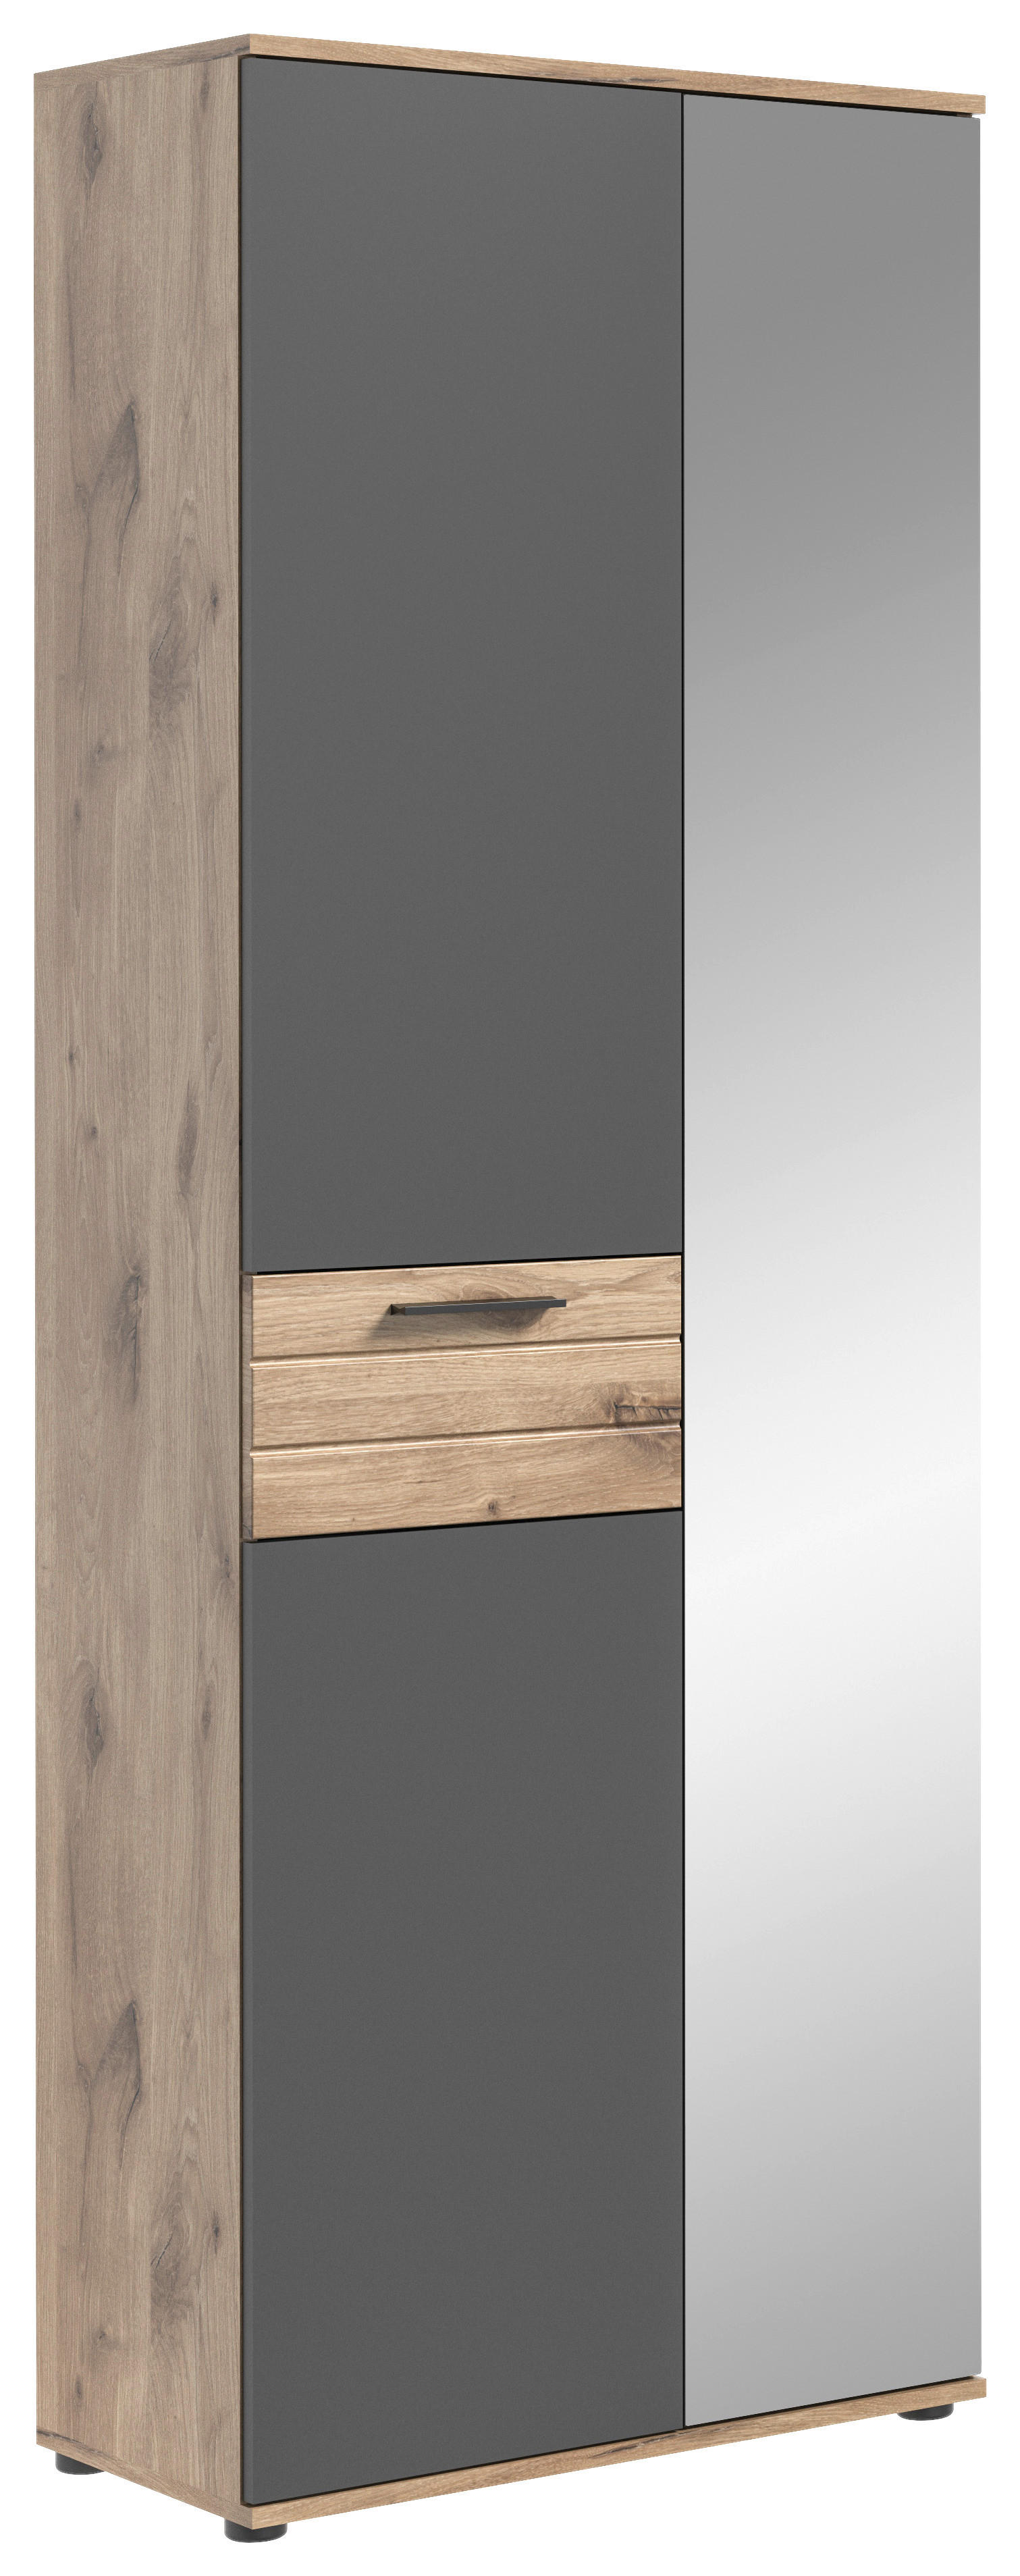 MID.YOU SKŘÍŇ NA ODĚV, šedá, barvy dubu, 70/200/37 cm - šedá,barvy dubu - kompozitní dřevo